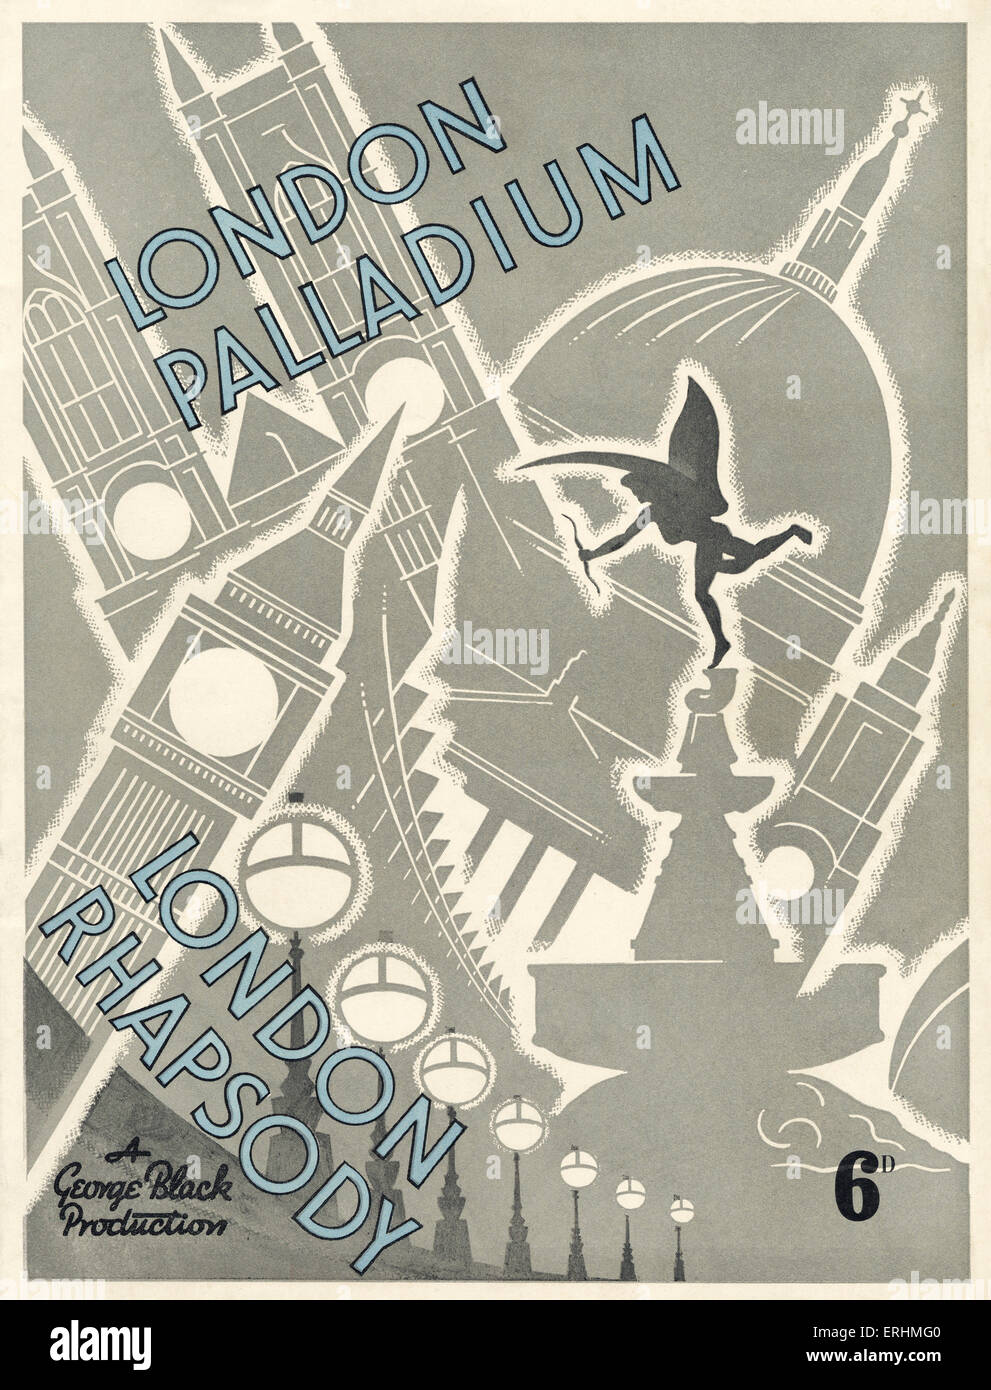 London Palladium Programm für "London Rhapsodie". Eine Produktion von George Black.  Cover-Illustration mit Statue des Eros. Stockfoto